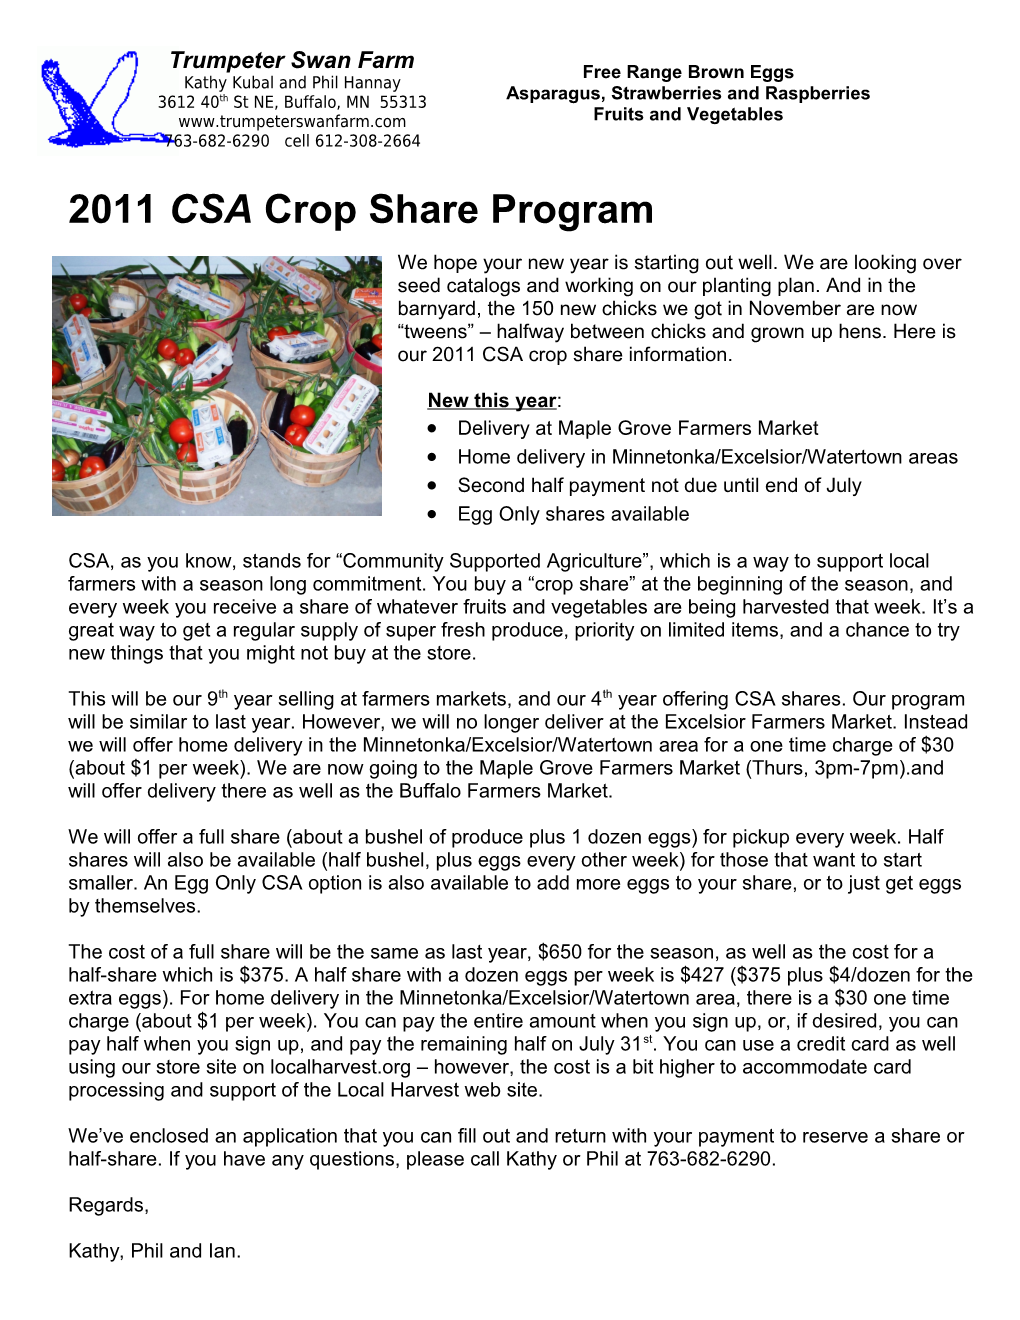 2009 CSA Crop Share Program